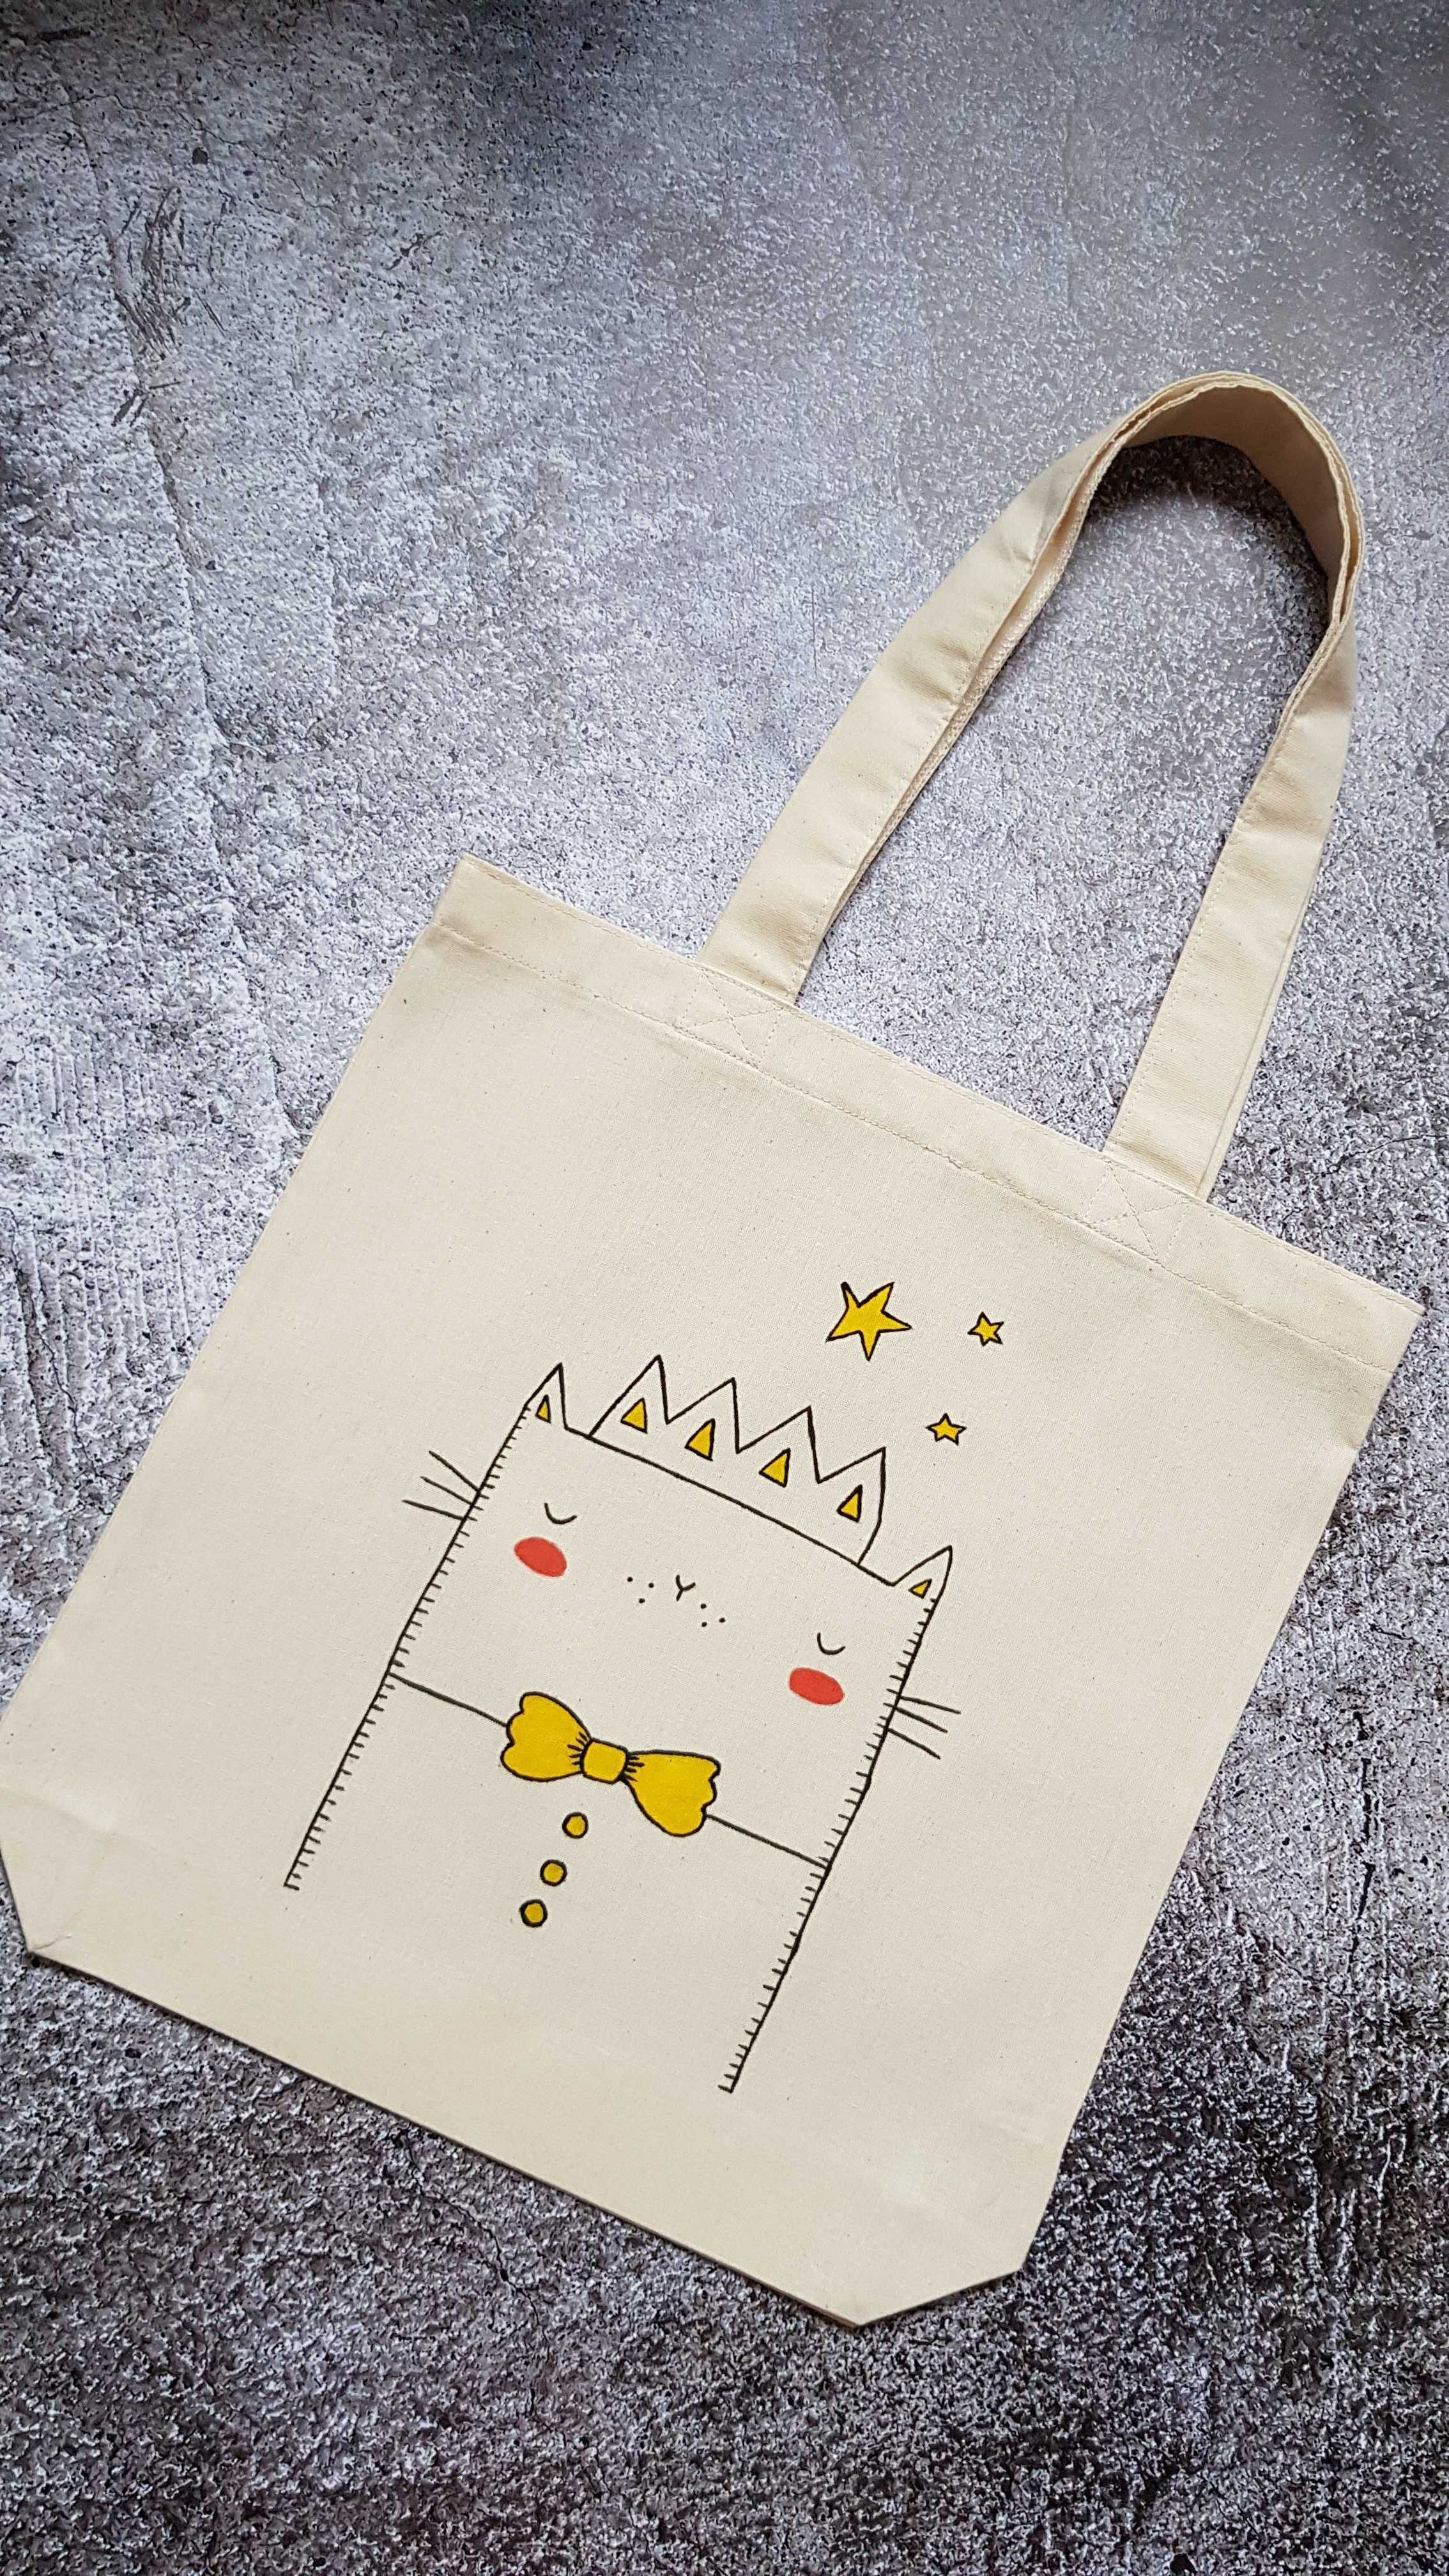 Купи эко сумку (торбу) с ручной росписью - накорми котика!